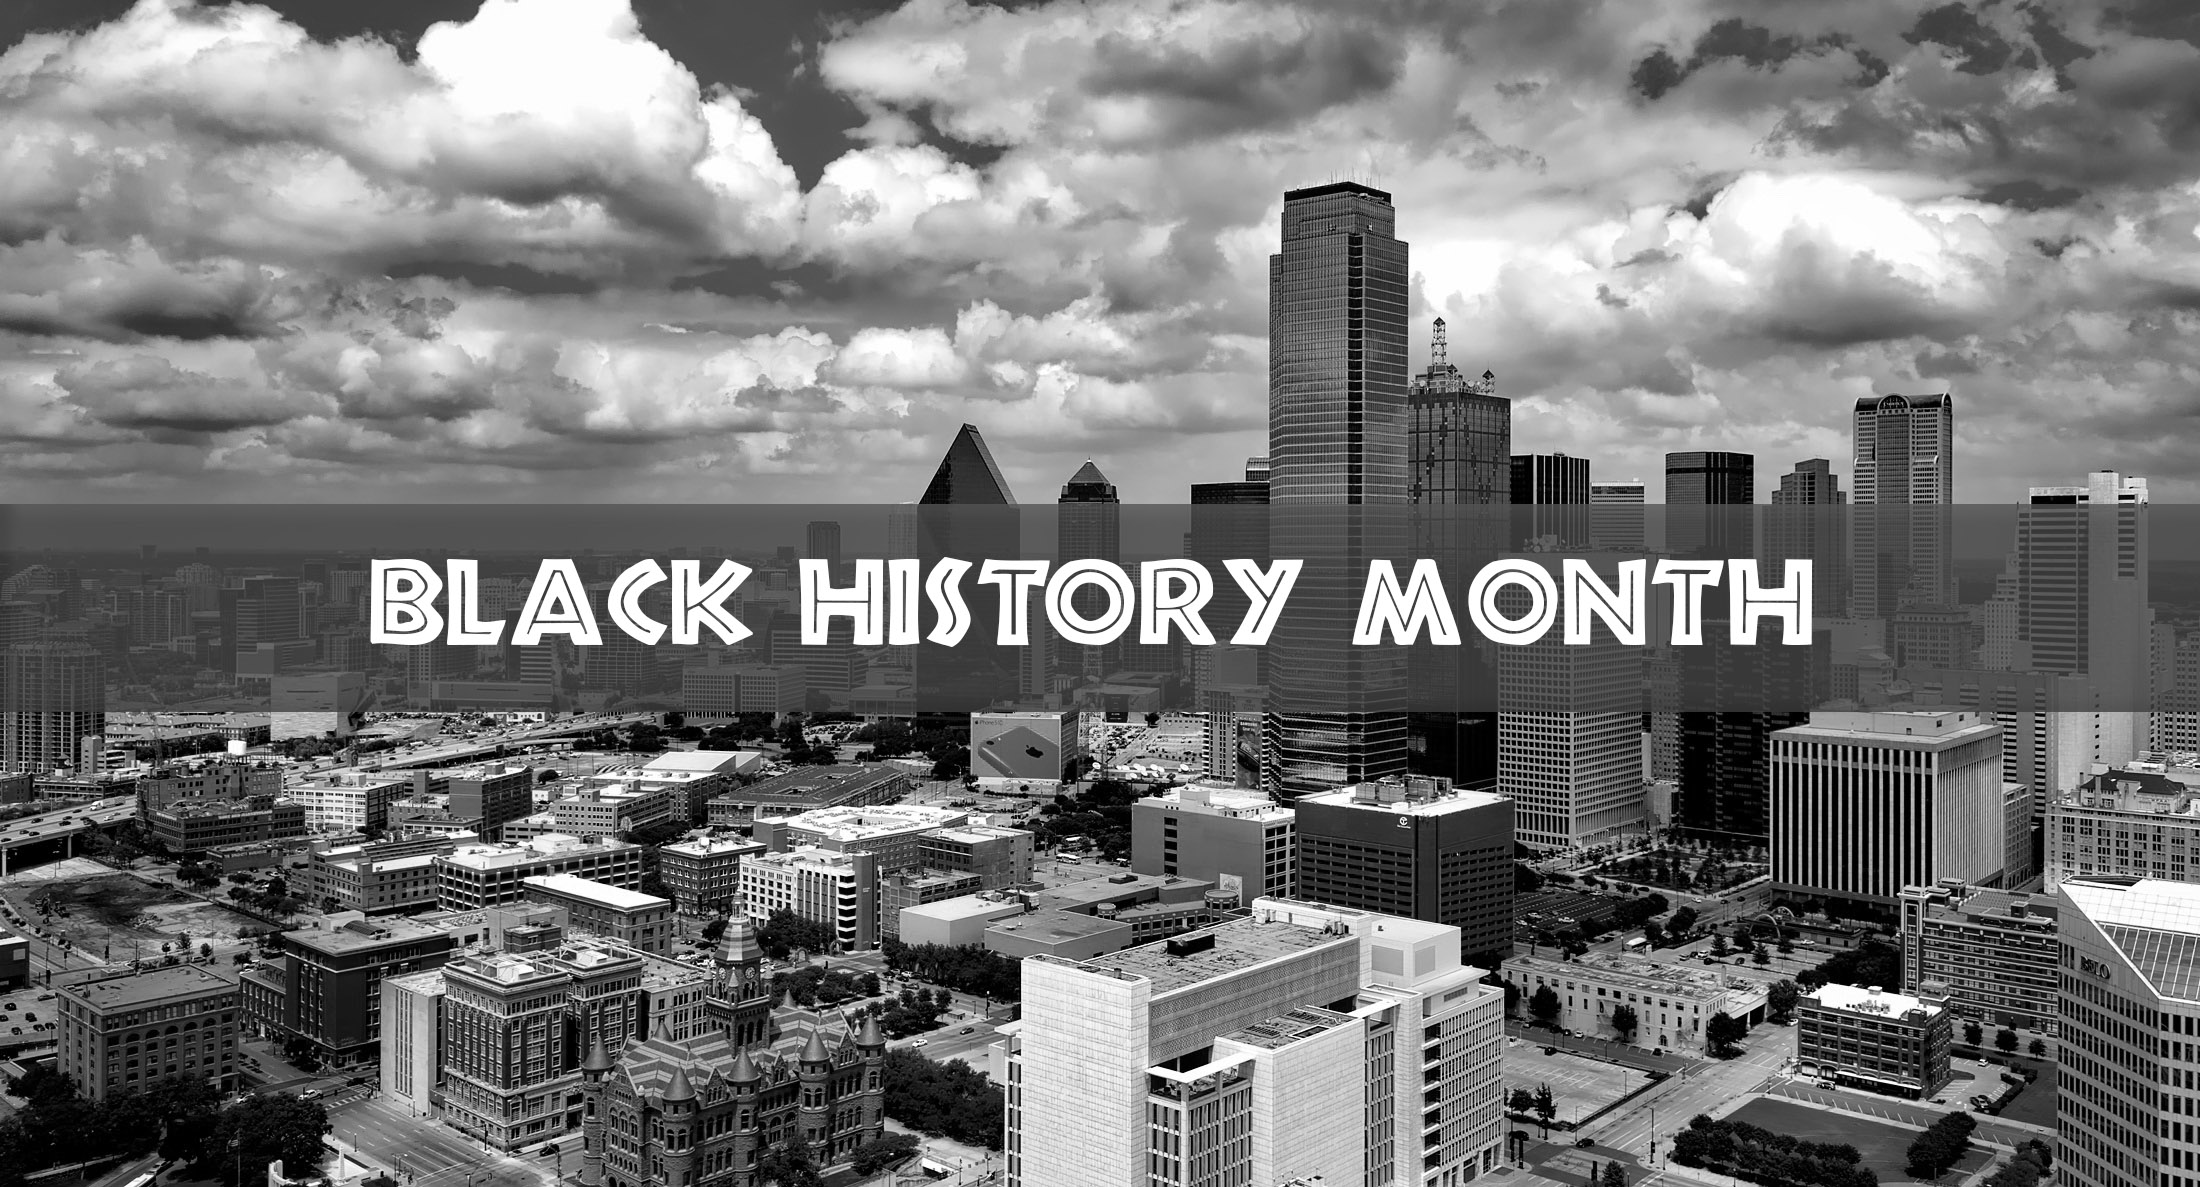 Black History month events in Dallas - Dallas City News